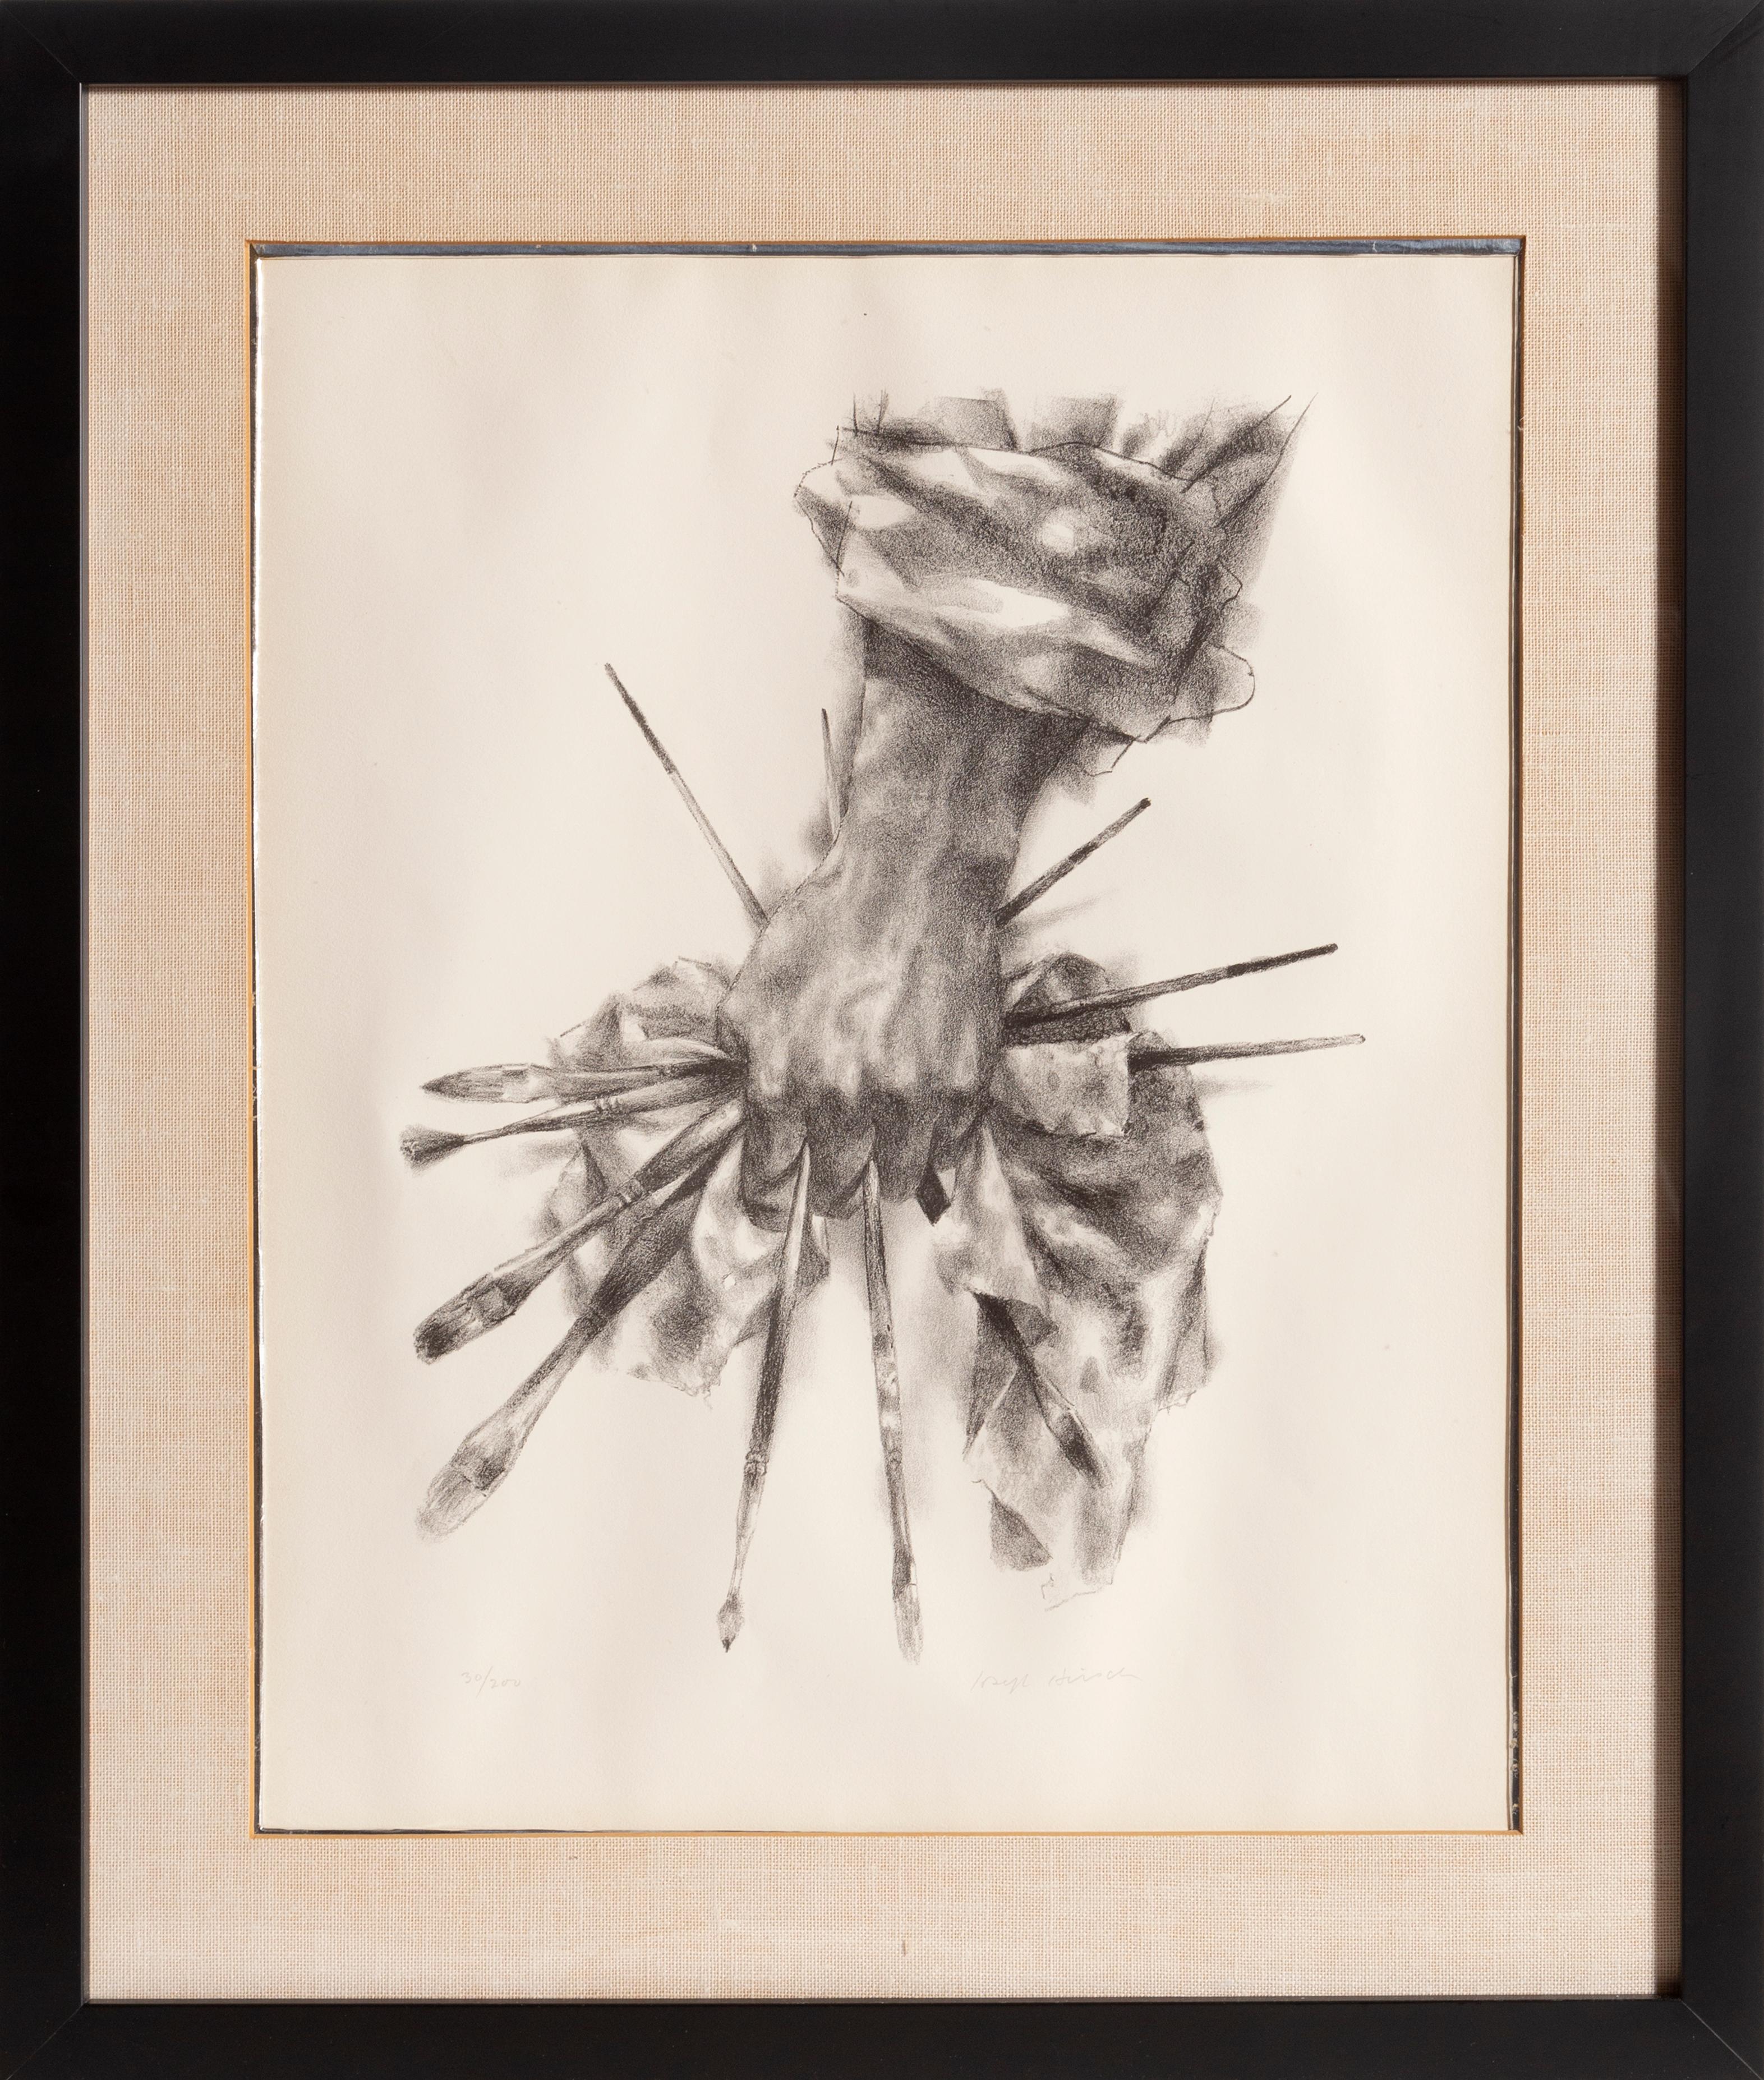 Artist's Hand, Realist Lithograph by Joseph Hirsch